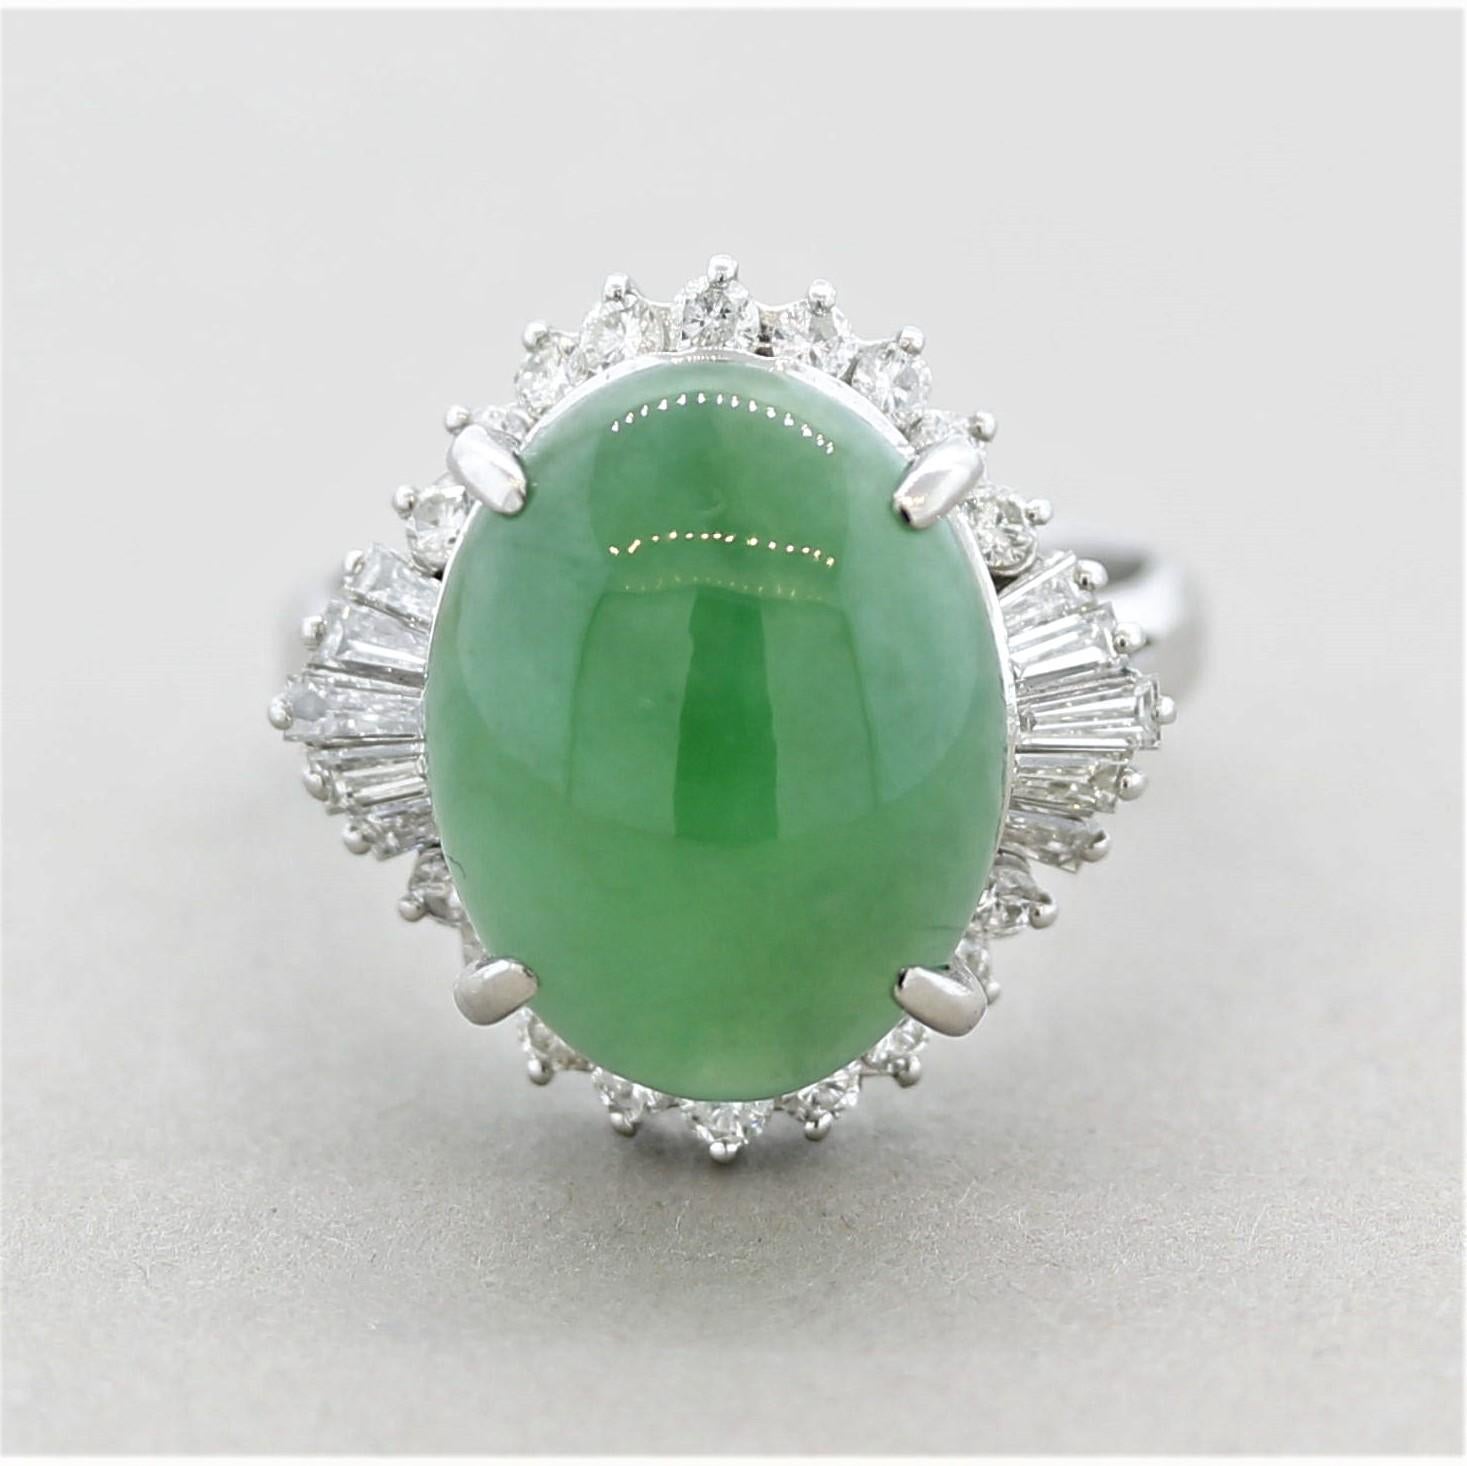 Ein schöner und stilvoller Jadering! Die Jade wiegt 7,34 Karat und hat eine weiche, süßgrüne Farbe mit exzellentem Glanz, und das Licht scheint über den Stein zu rollen wie Seide. Er ist mit 0,71 Karat runden Diamanten im Brillant- und